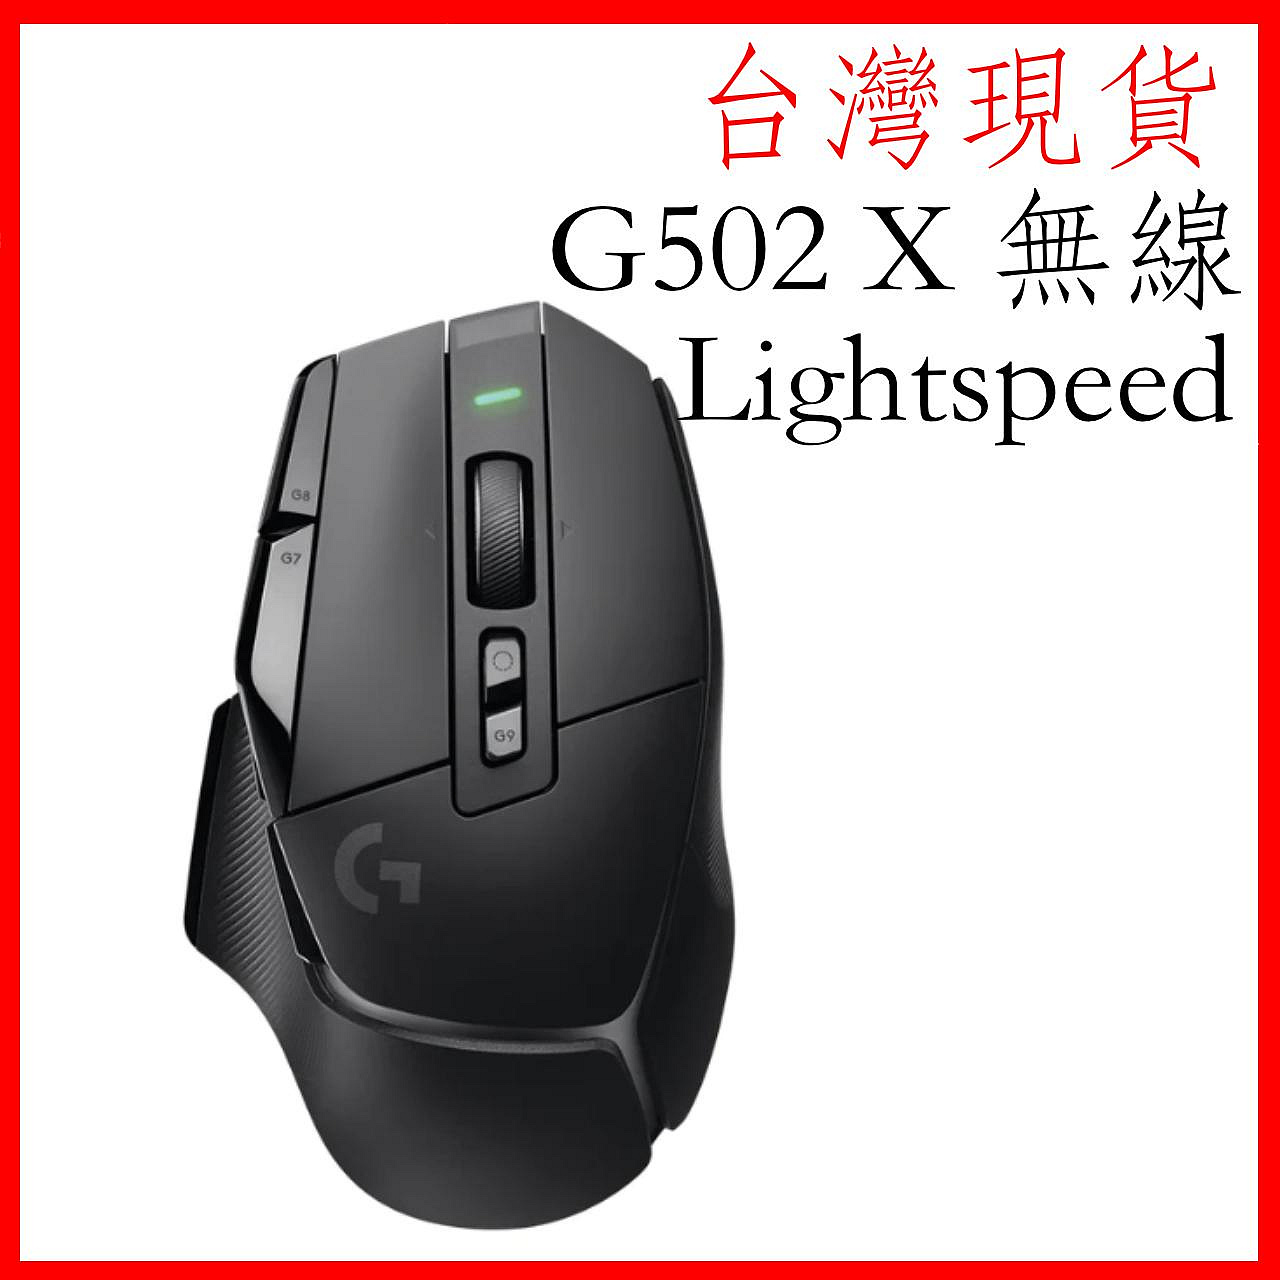 台灣現貨 logitech G502 X lightspeed 無線電競滑鼠 HERO25K 光學微動 電競滑鼠